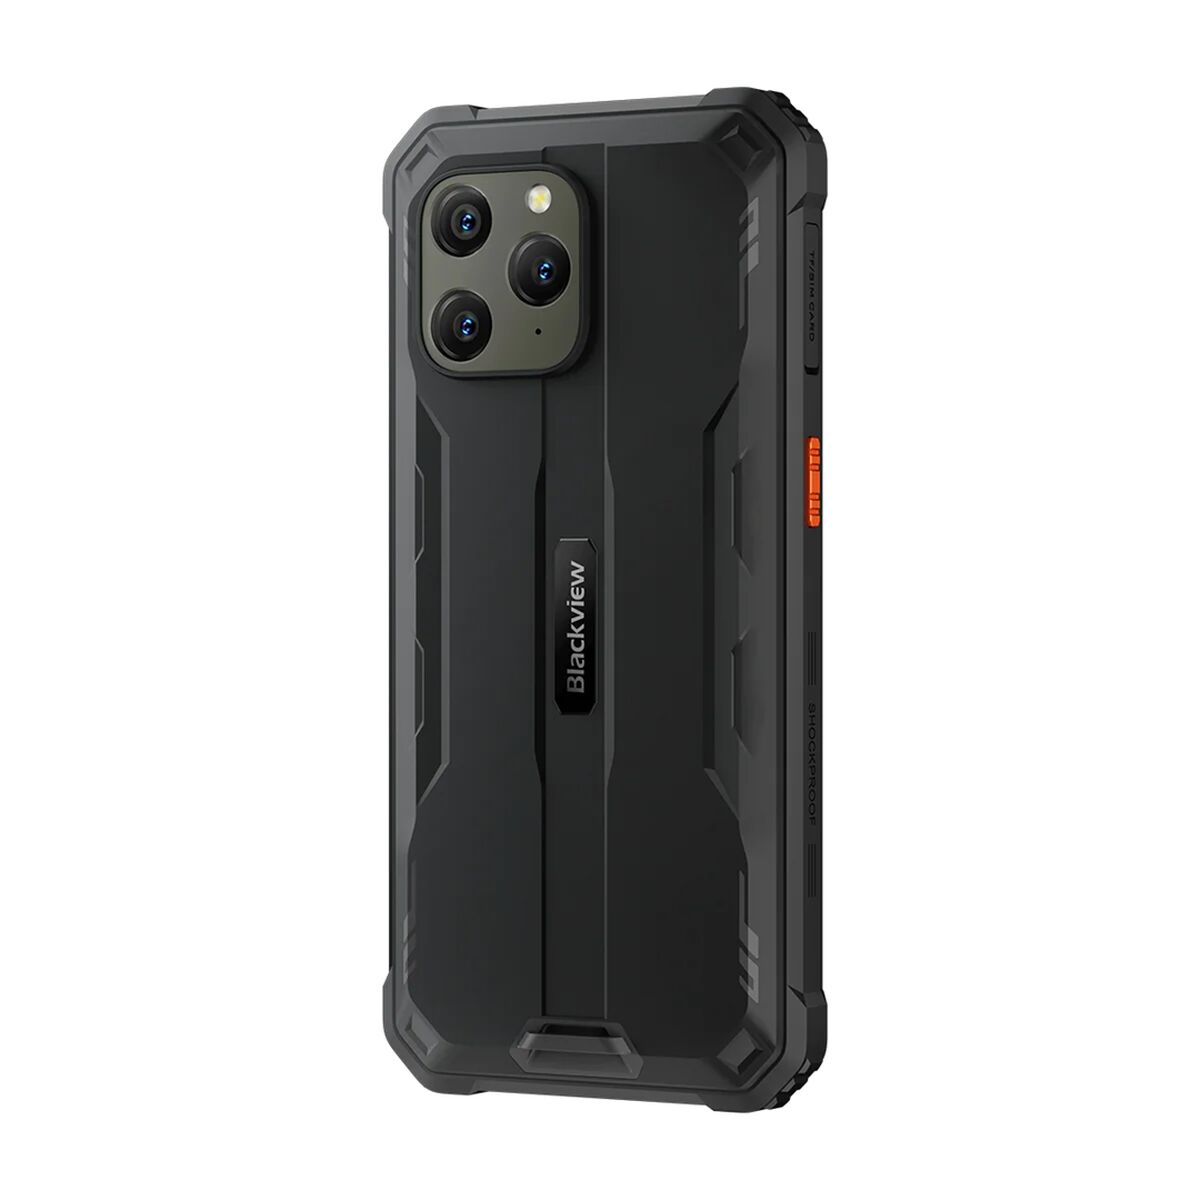 Smartphone Blackview BV5300 Pro 6,1" 64 GB 4 GB RAM Octa Core MediaTek Helio P35 Zwart